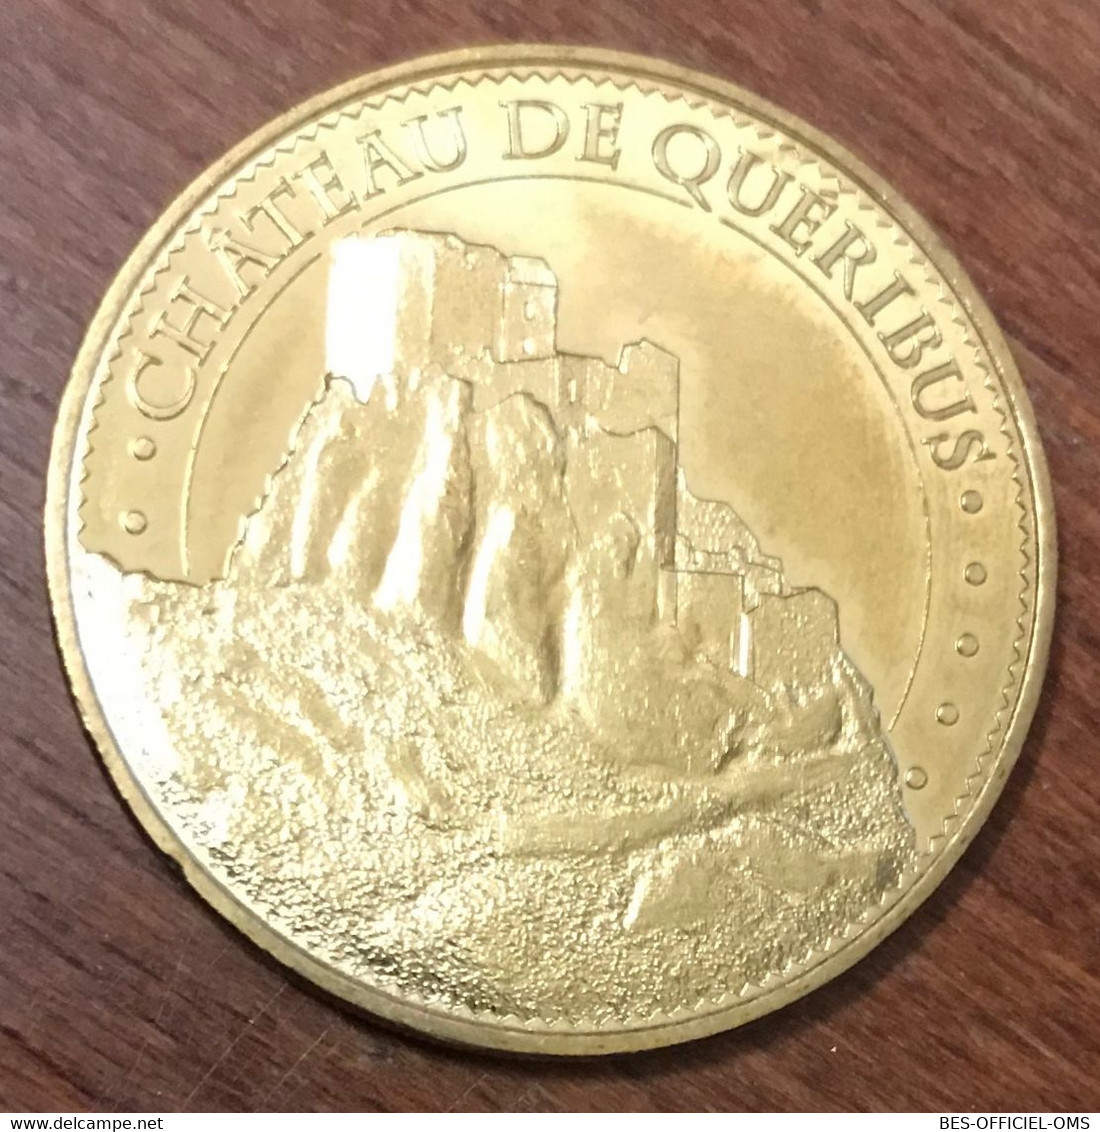 11 CHÂTEAU DE QUÉRIBUS MDP 2015 MÉDAILLE SOUVENIR MONNAIE DE PARIS JETON TOURISTIQUE MEDALS COINS TOKENS - 2015